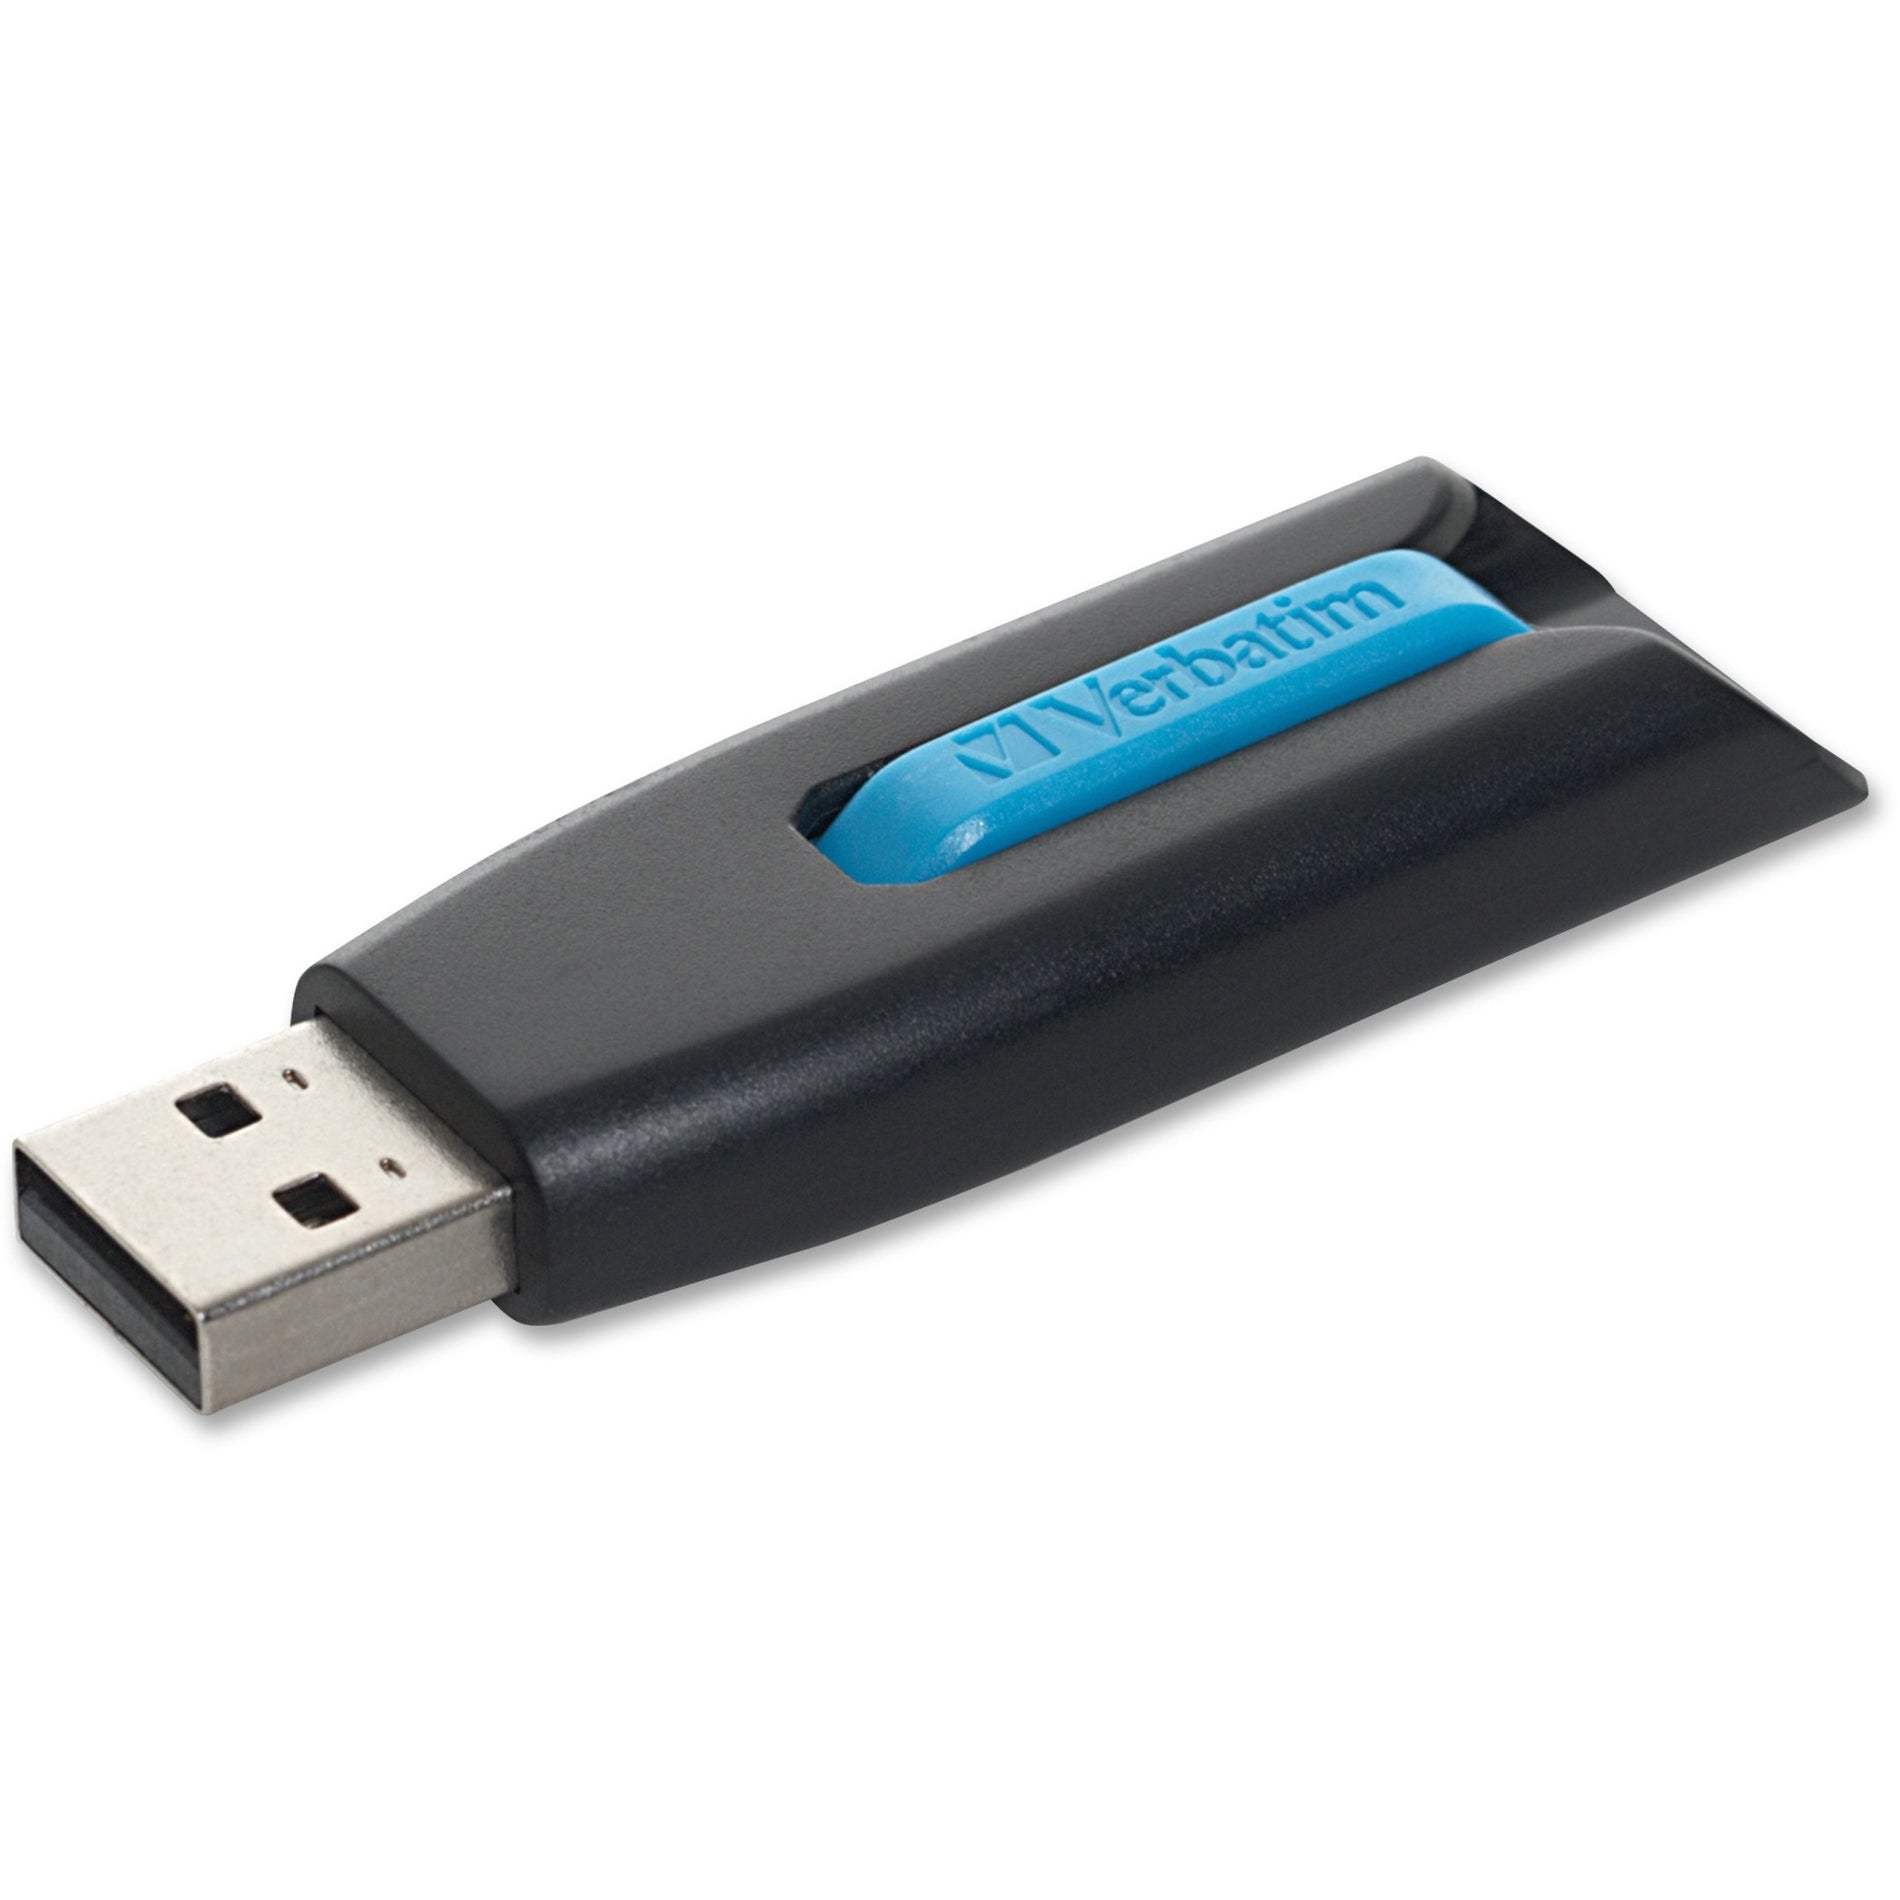 Marca: Microban  Microban 49176 Store 'n' Go V3 USB Drive 16GB Azul